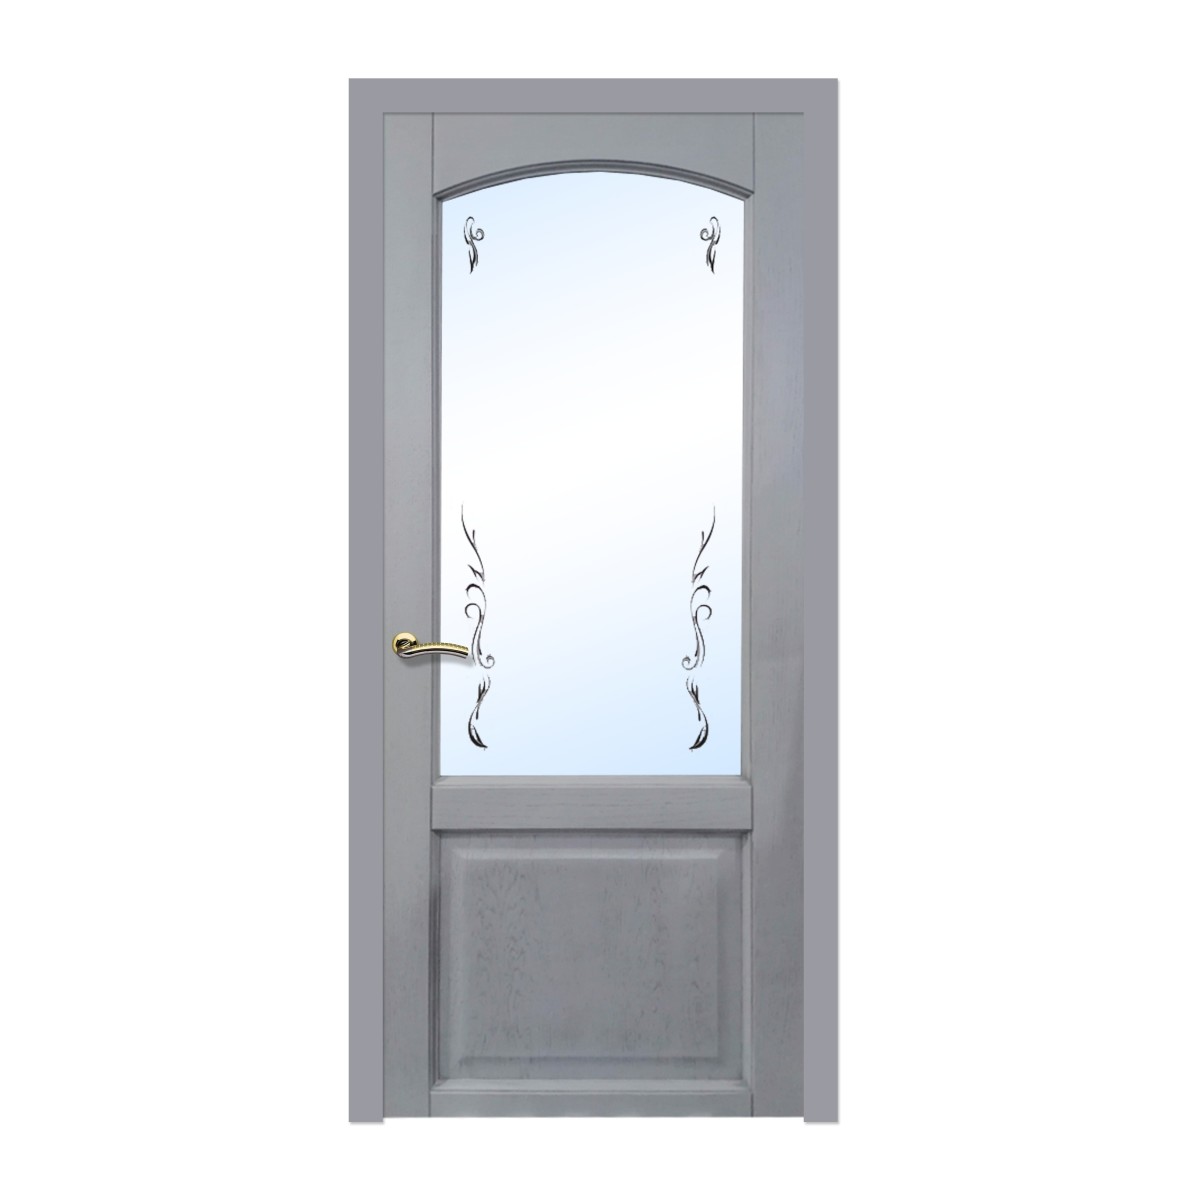 Дверь межкомнатная остеклённая 819 80x200 см, шпон, цвет дуб серая патина